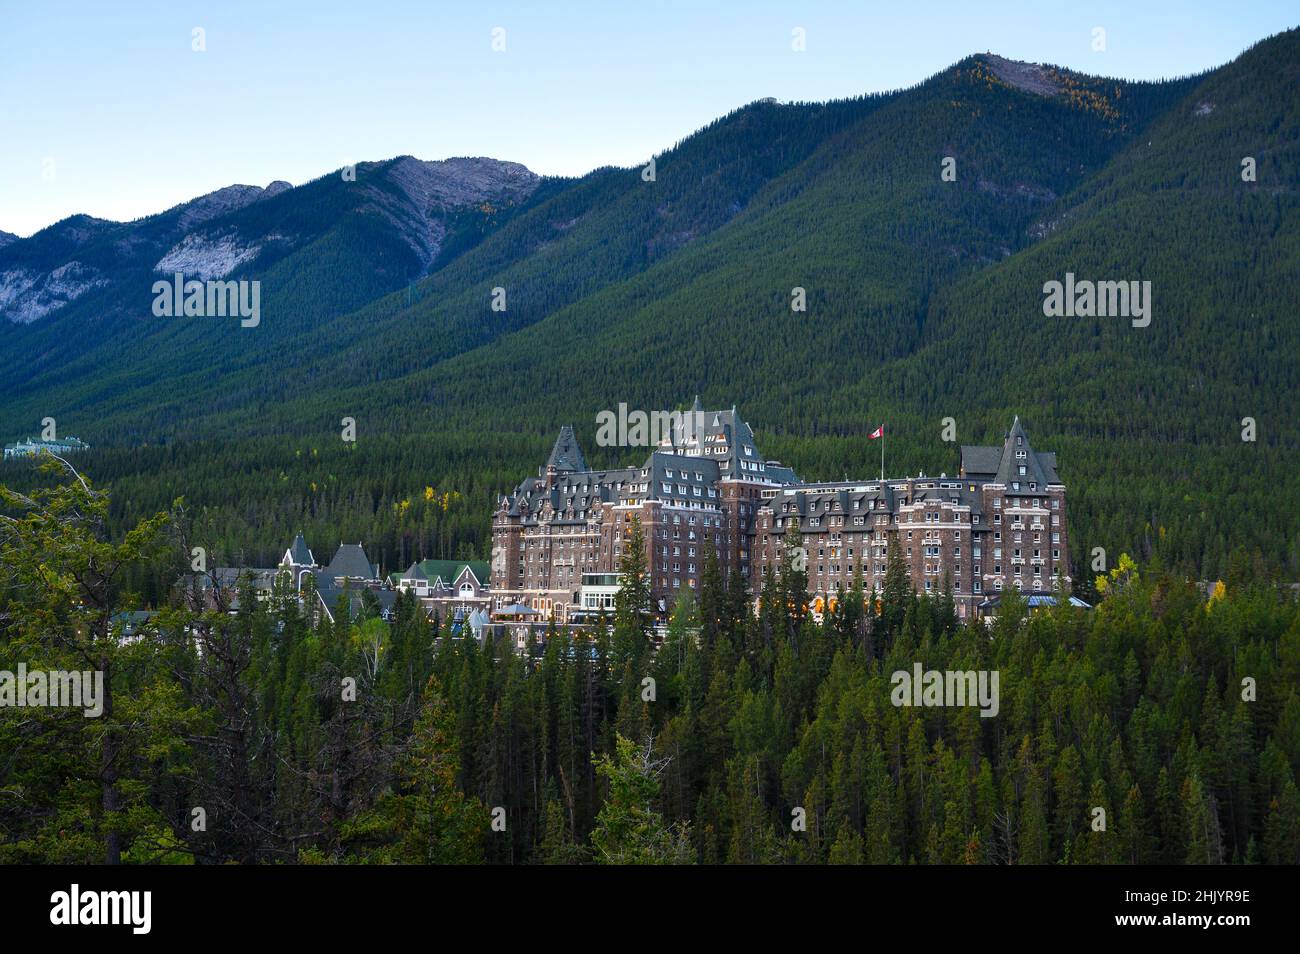 Fairmont Banff Springs Hotel en Rocky Mounatins, Canadá Foto de stock